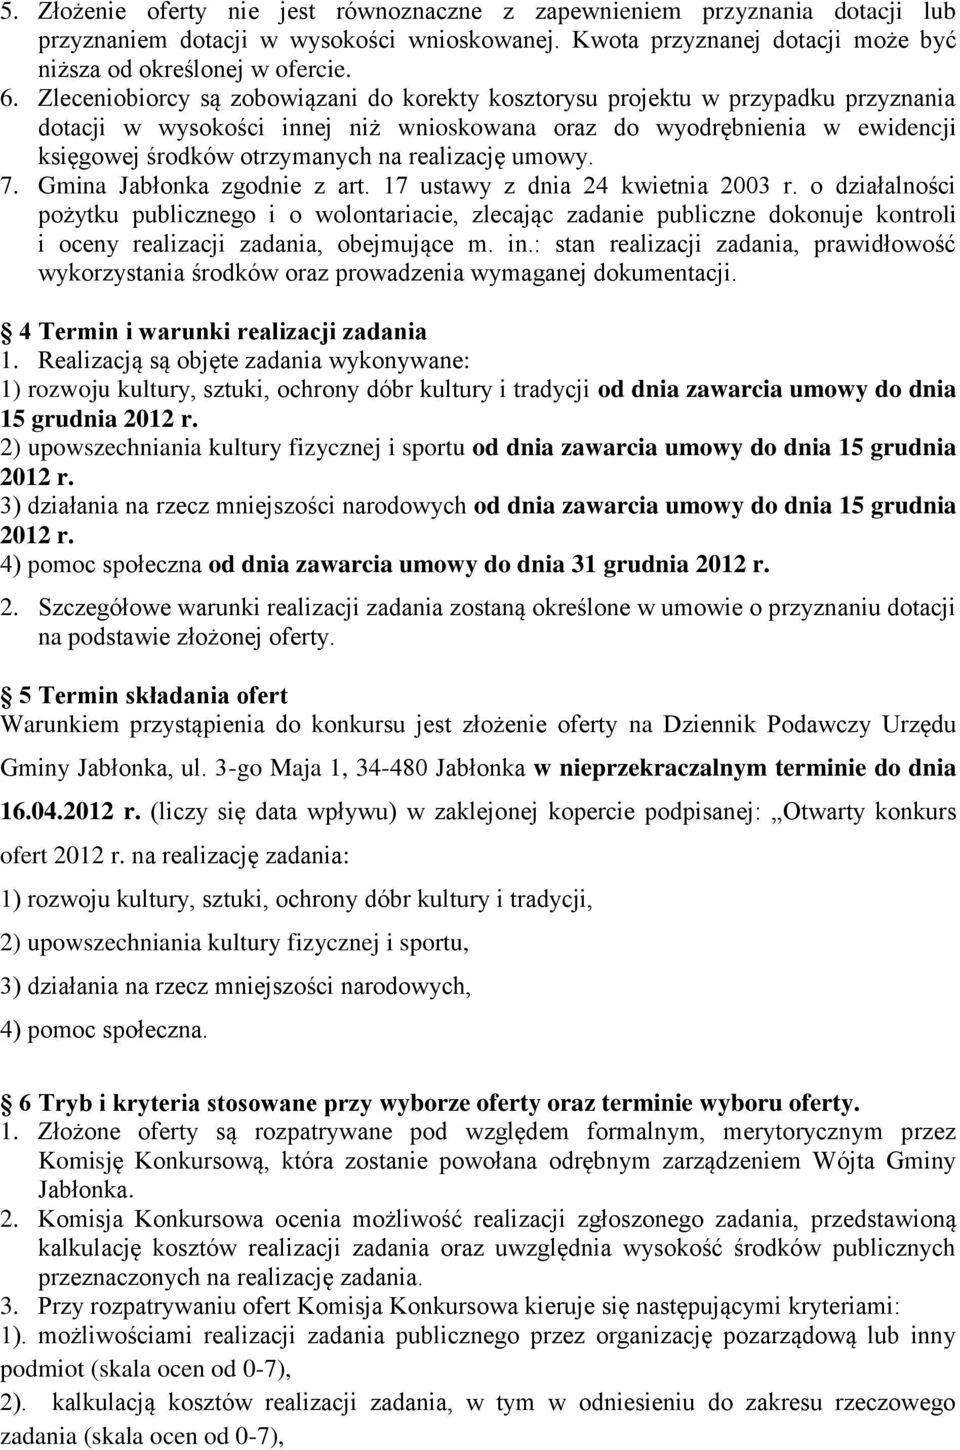 realizację umowy. 7. Gmina Jabłonka zgodnie z art. 17 ustawy z dnia 24 kwietnia 2003 r.